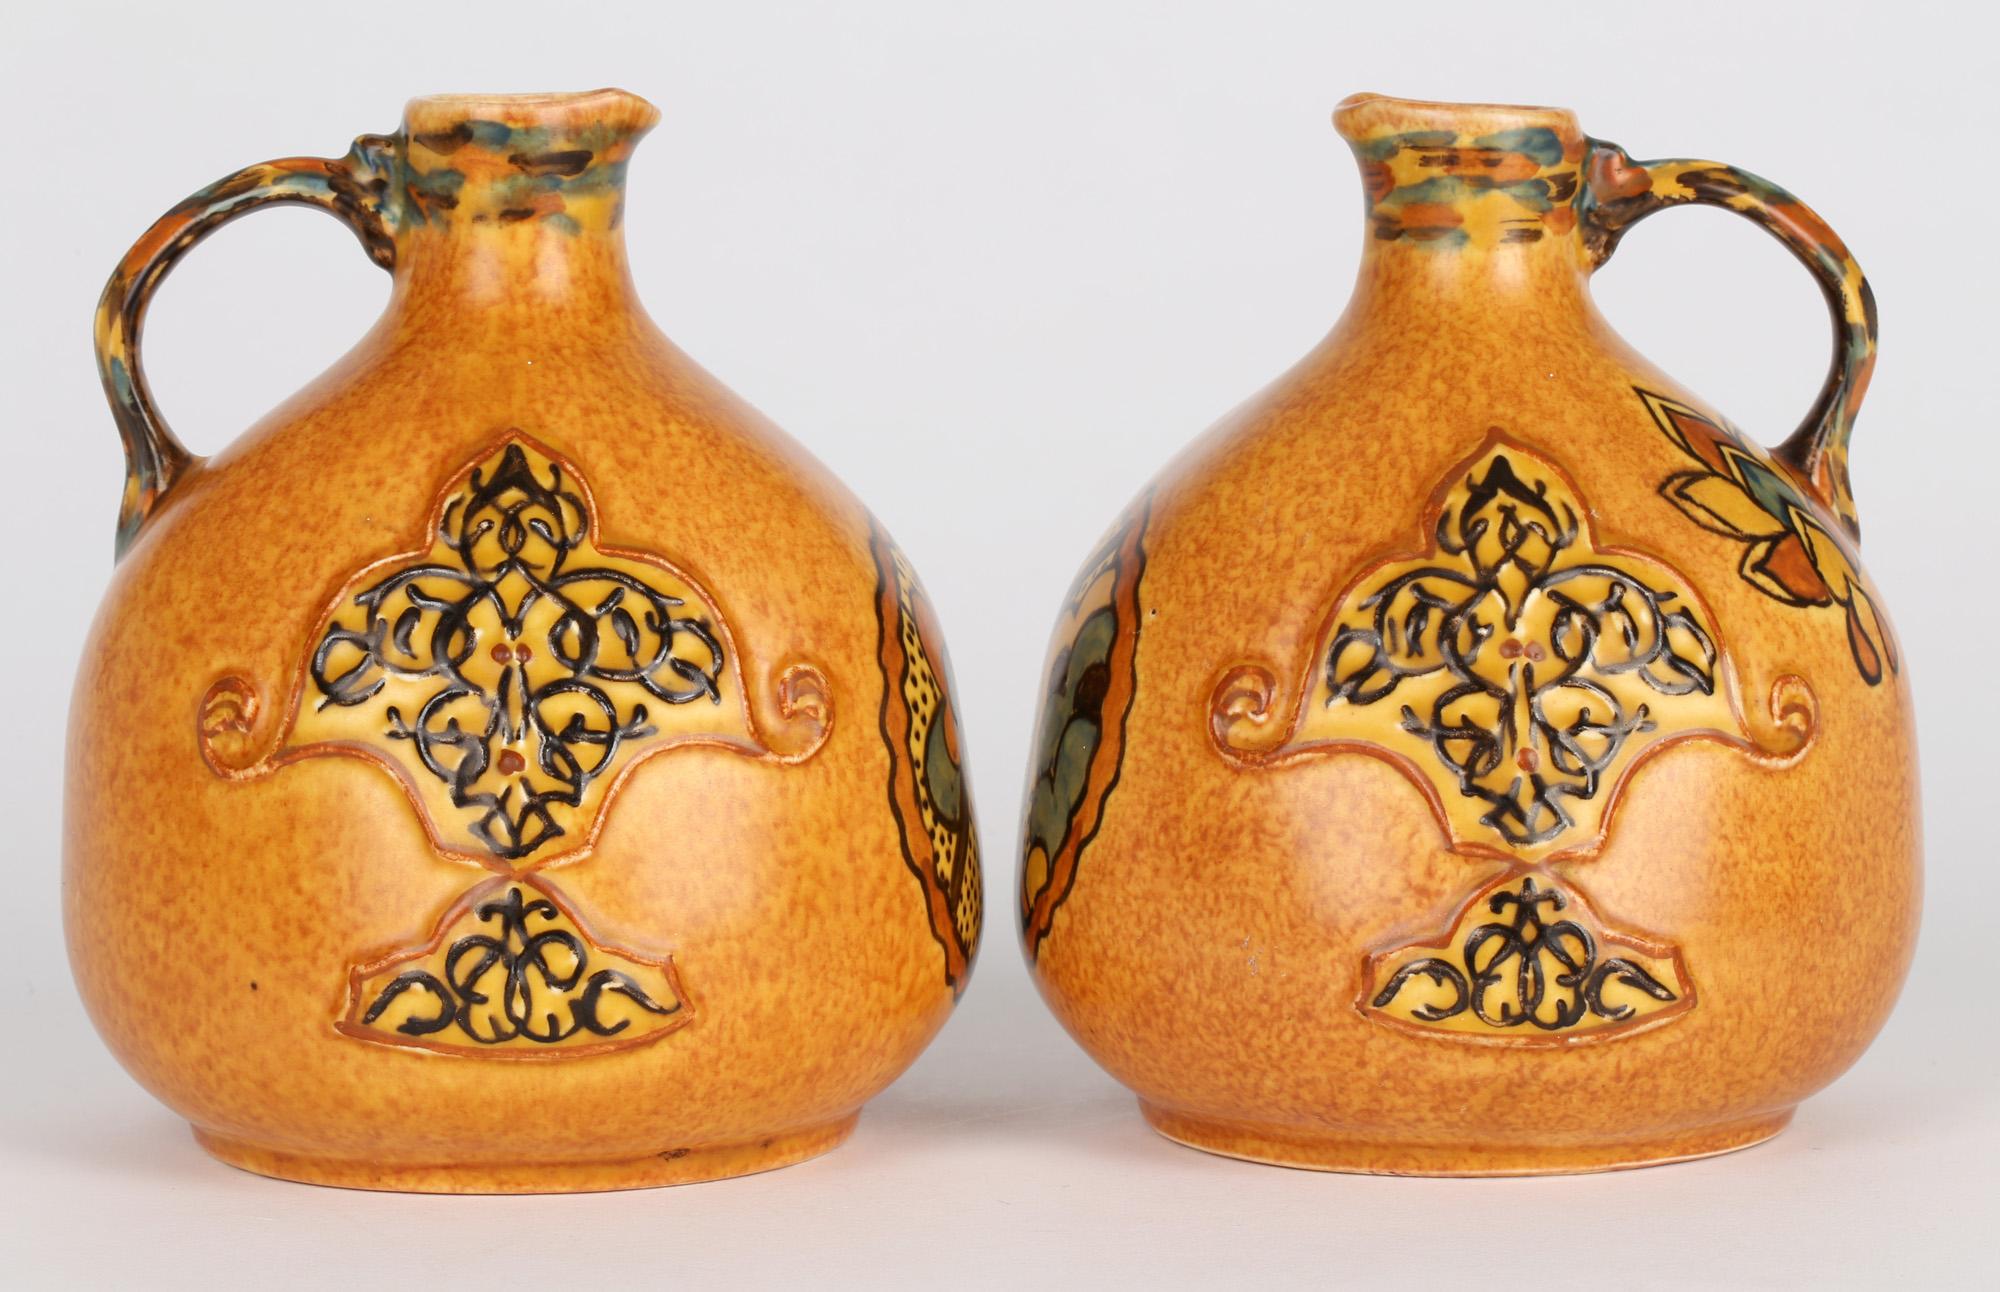 Ein sehr stilvolles Paar Art Deco George Clews & Co, Tunstall, Chameleon Ware Reproduktion der persischen Kunst behandelt Keramik Krüge aus etwa 1930. Die Kannen stehen auf einem abgerundeten Sockel und haben einen leicht zusammengedrückten, runden